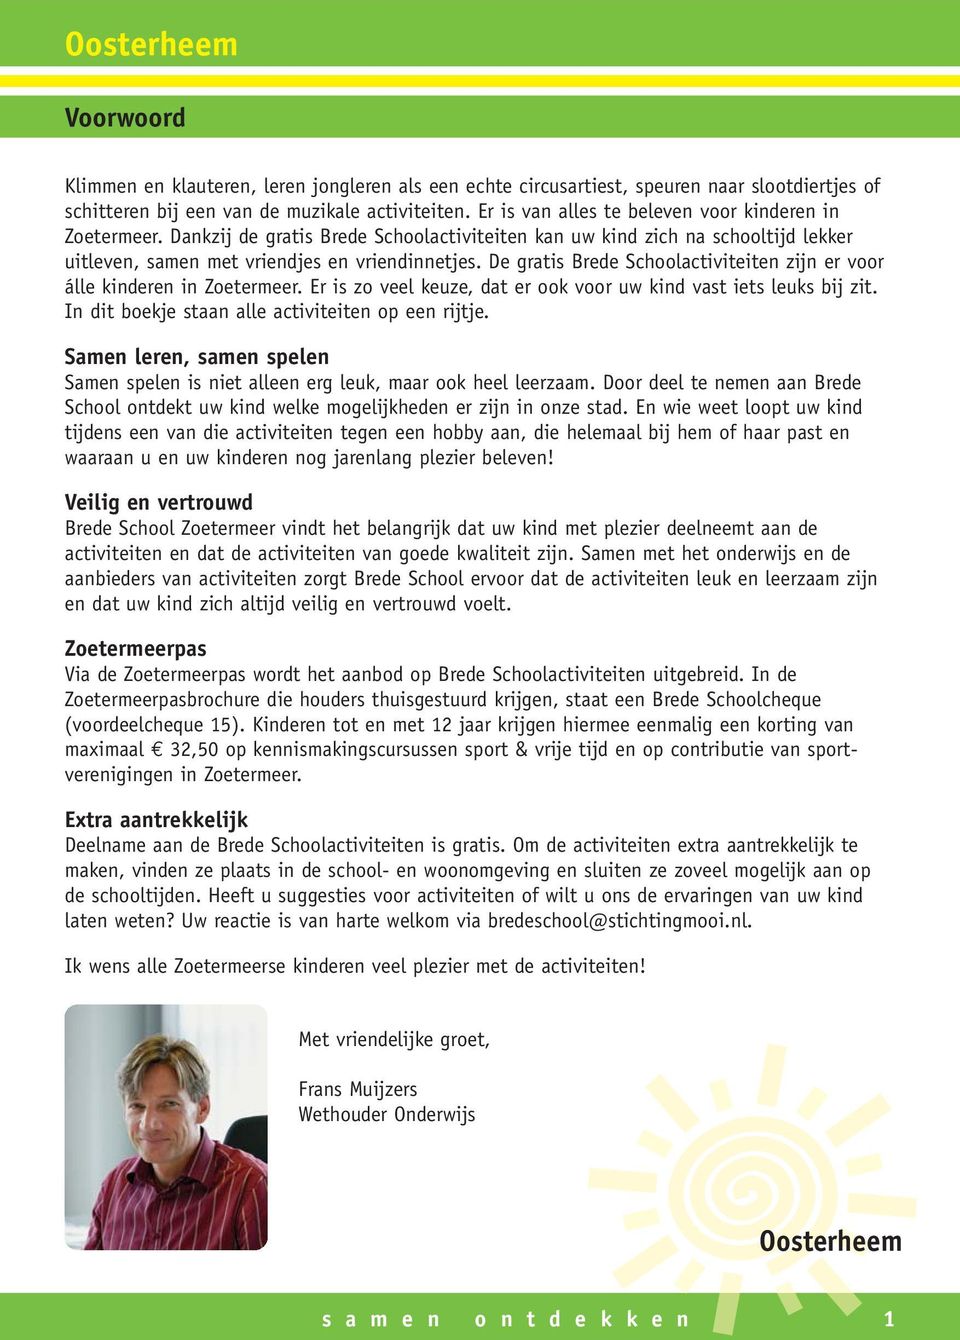 De gratis Brede Schoolactiviteiten zijn er voor álle kinderen in Zoetermeer. Er is zo veel keuze, dat er ook voor uw kind vast iets leuks bij zit. In dit boekje staan alle activiteiten op een rijtje.